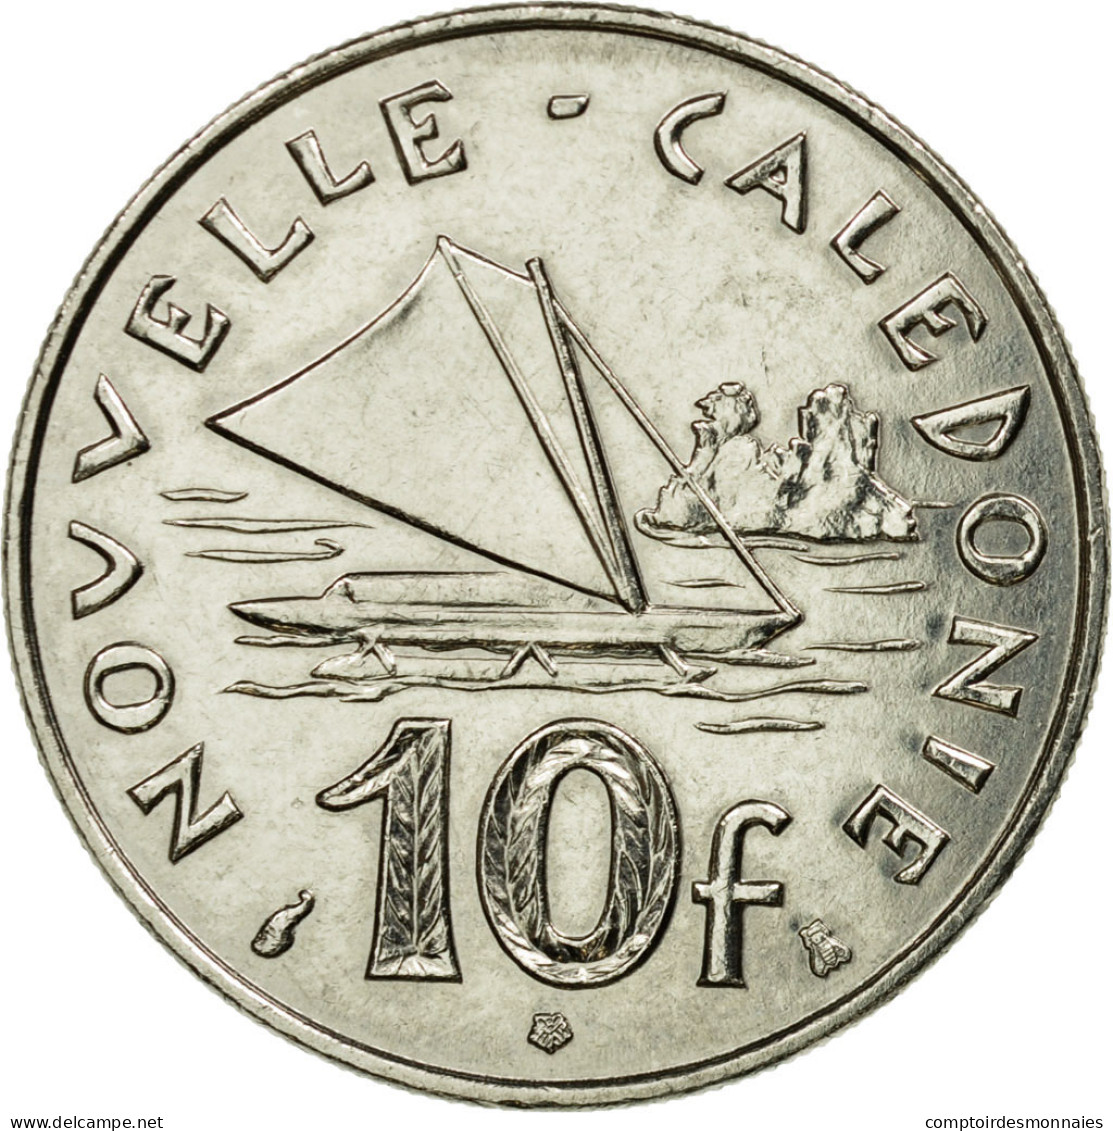 Monnaie, Nouvelle-Calédonie, 10 Francs, 1995, Paris, SUP, Nickel, KM:11 - Neu-Kaledonien